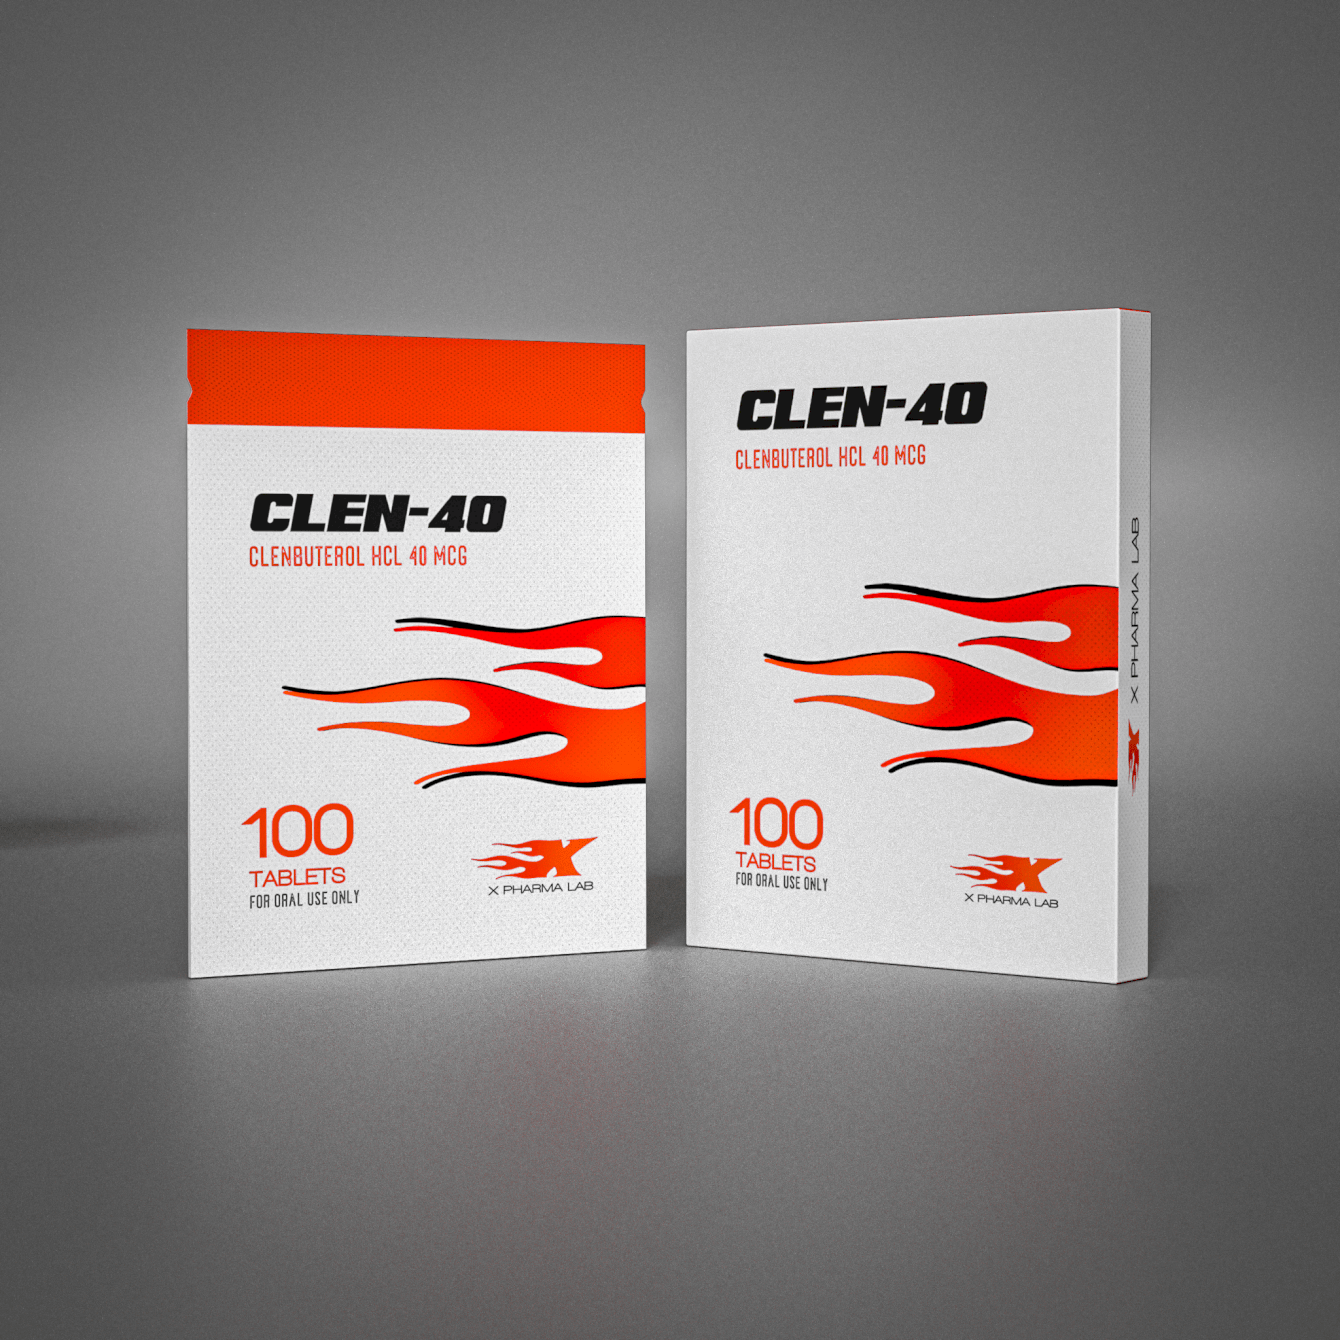 CLEN-40